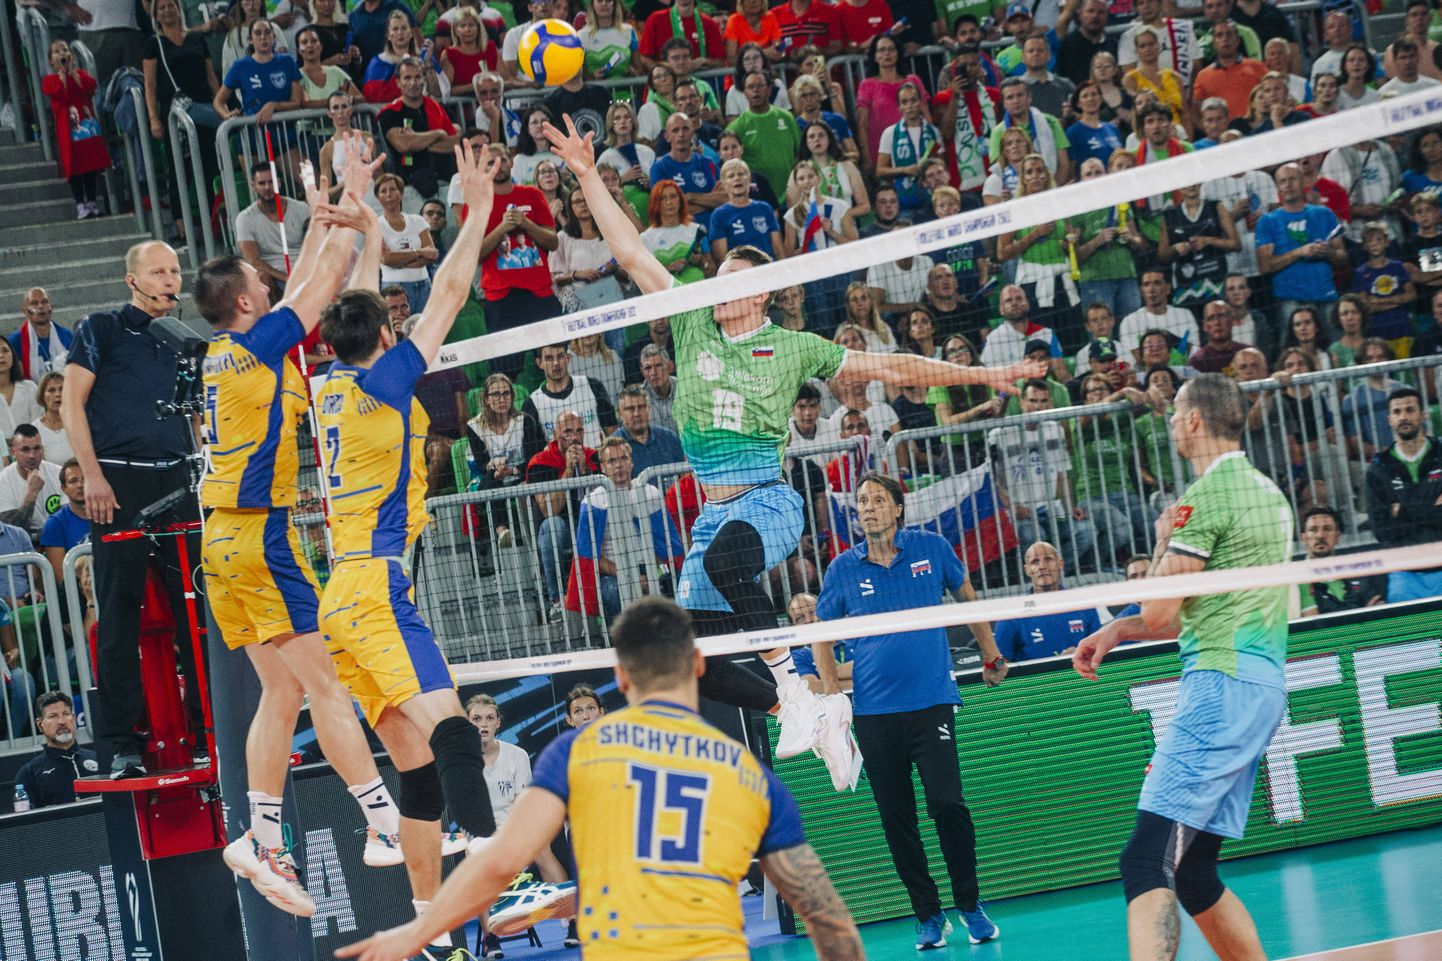 Venemaa asemel MMile pääsenud Ukraina langes konkurentsist veerandfinaalis, kus jäi alla Sloveeniale.